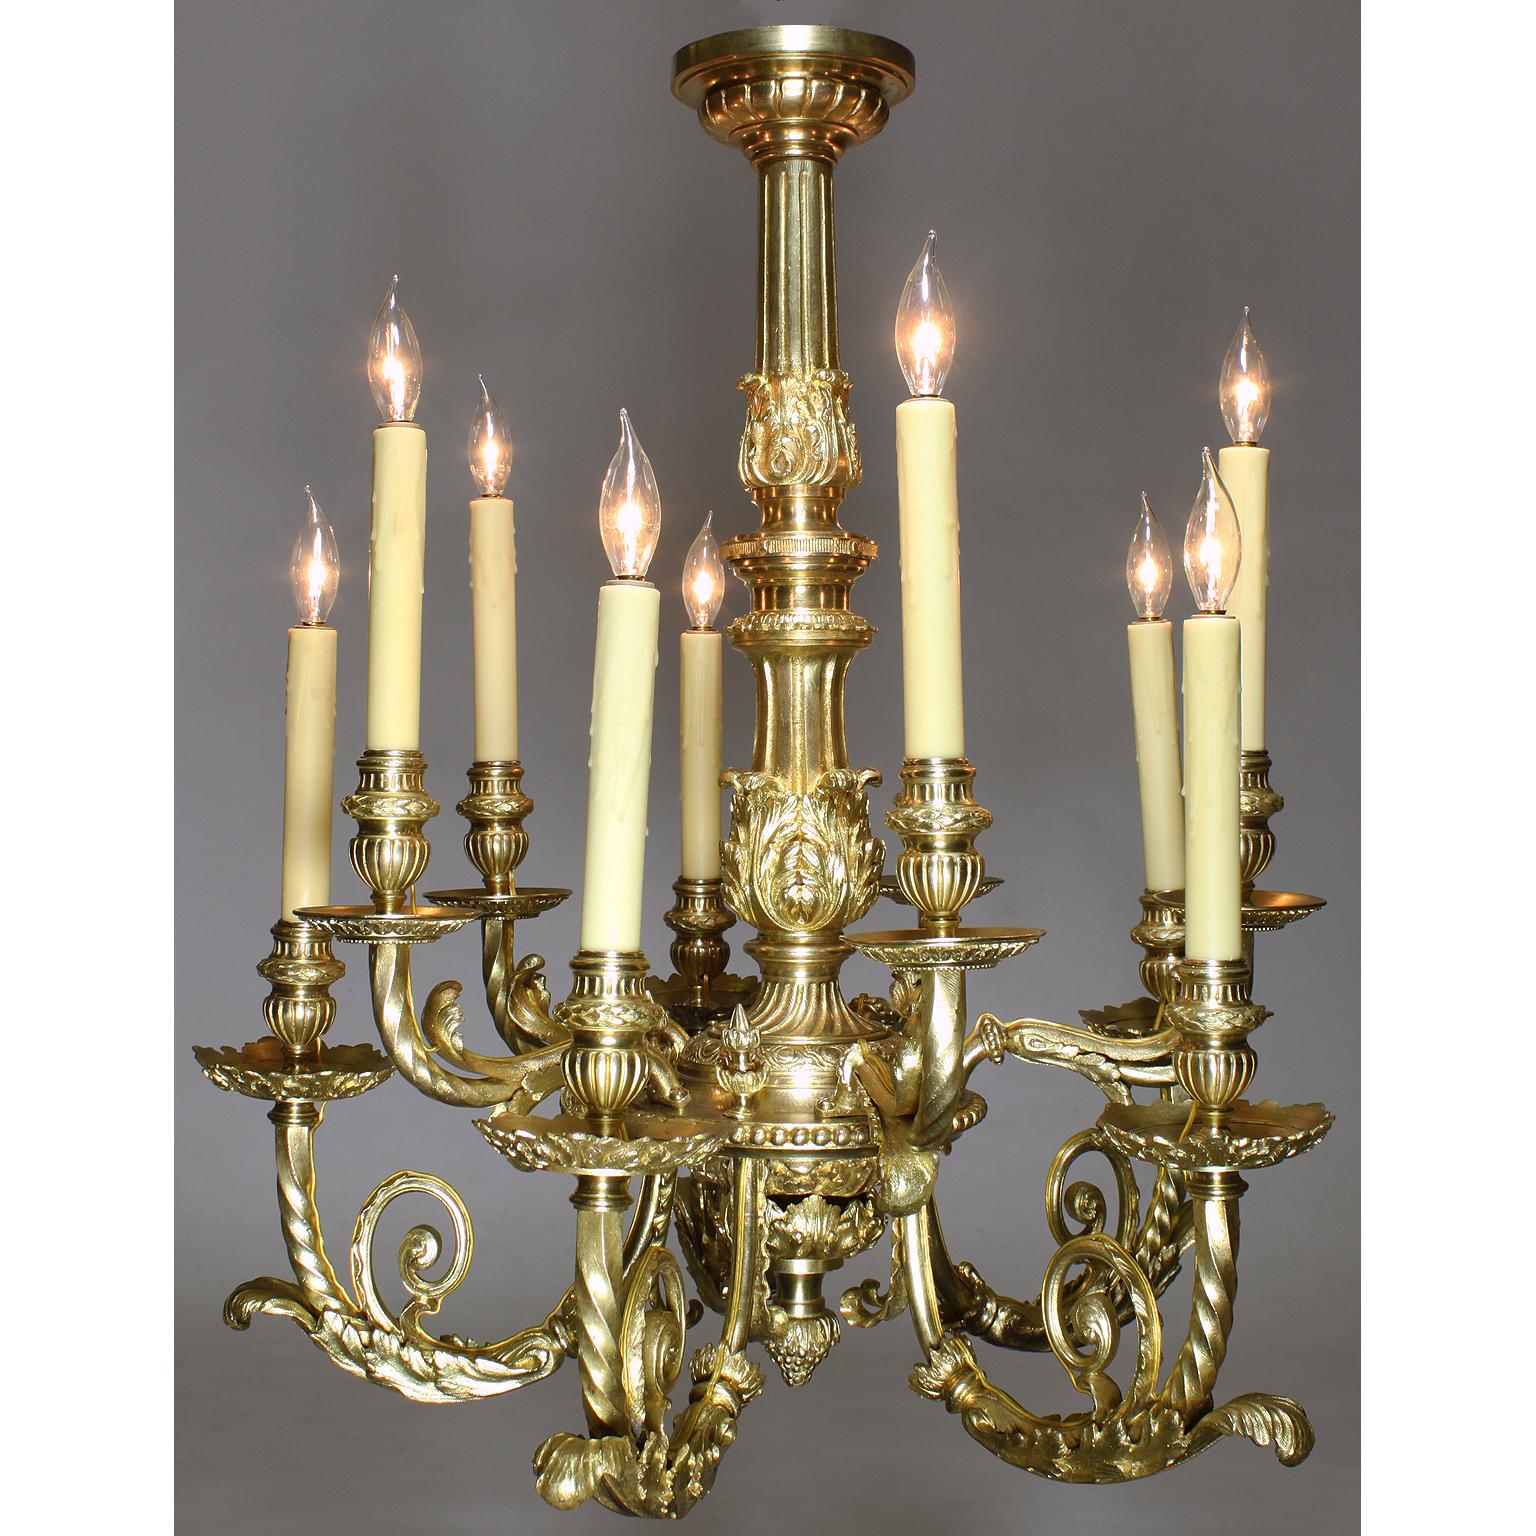 Lustre à dix lumières en bronze doré de style Louis XV, du 19e au 20e siècle. La tige effilée en forme de pointe de feuille et cannelée est surmontée d'une coupe en forme d'urne et de bras feuillagés qui soulèvent des buses en forme d'urne se